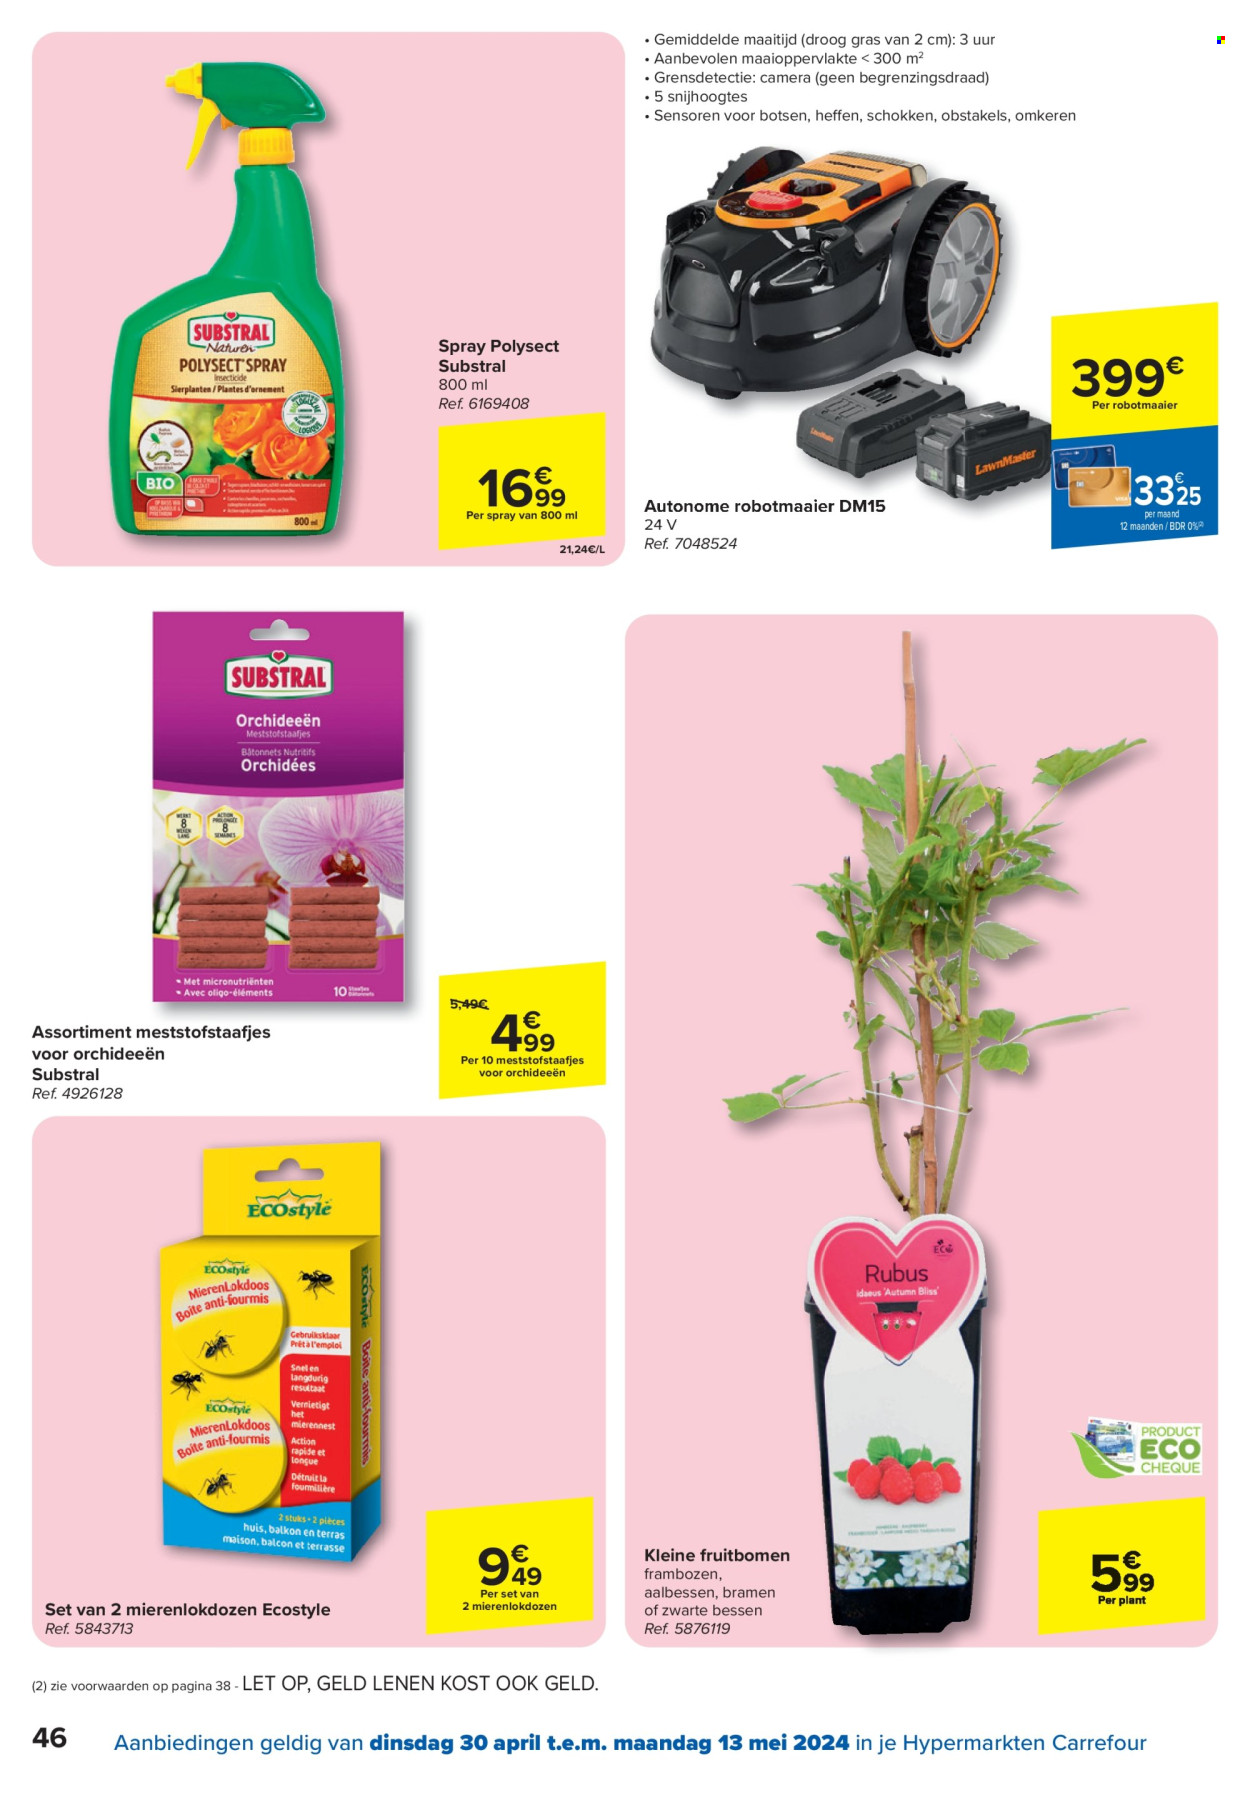 thumbnail - Carrefour hypermarkt-aanbieding - 30/04/2024 - 13/05/2024 -  producten in de aanbieding - aalbessen, bessen, bramen, frambozen, vliegenvanger, insecten val, camera. Pagina 46.